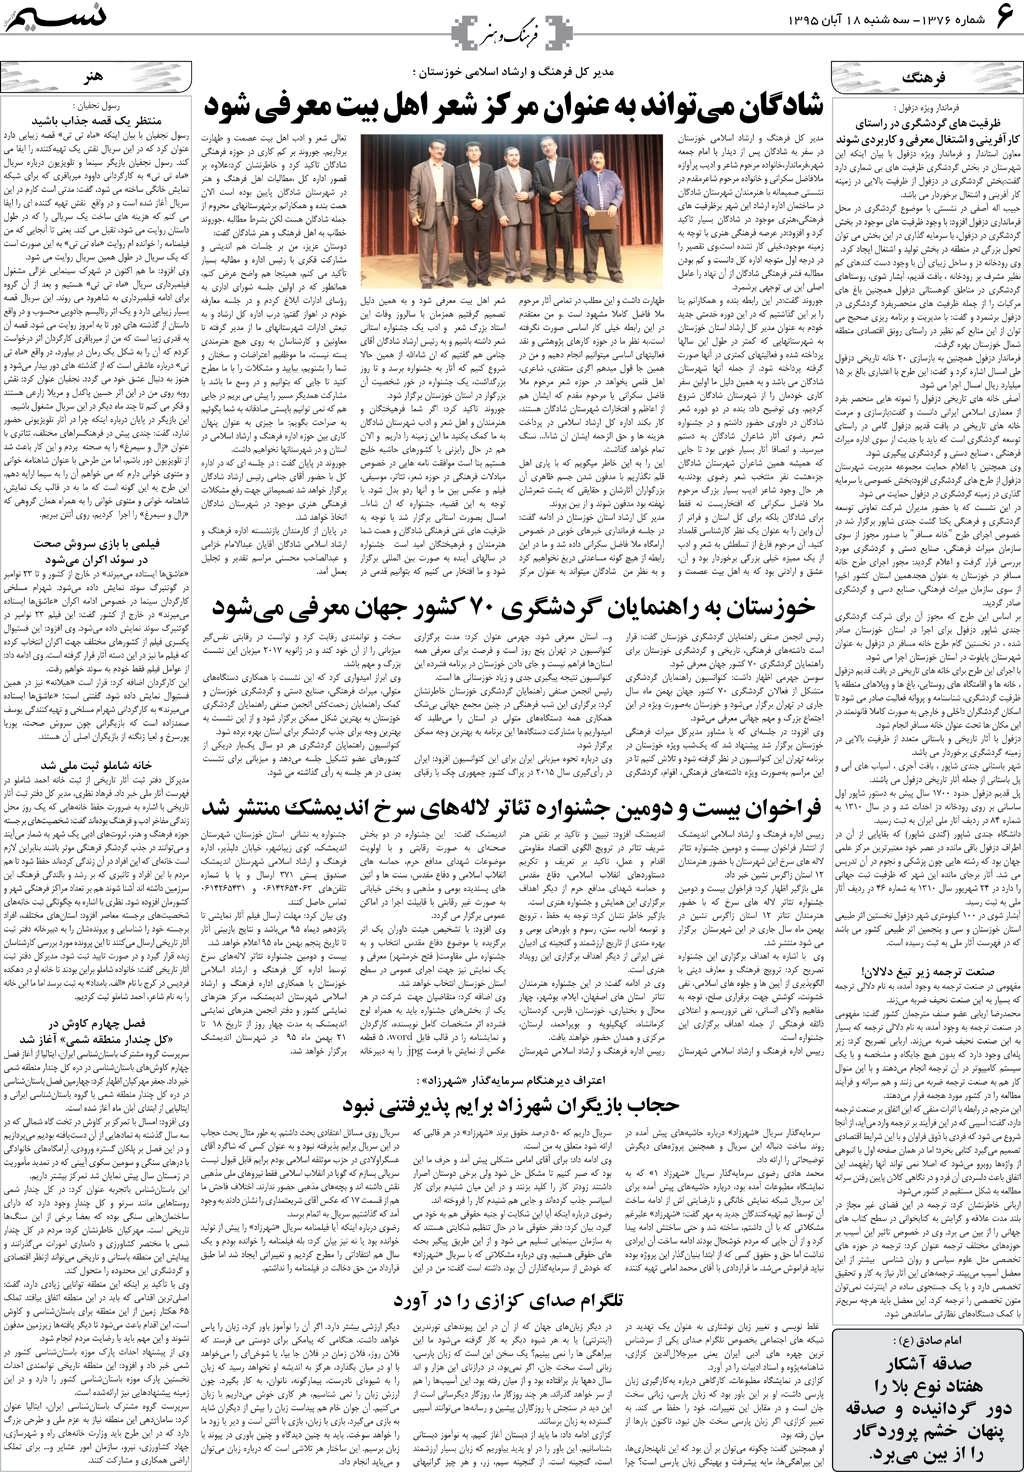 صفحه فرهنگ و هنر روزنامه نسیم شماره 1376